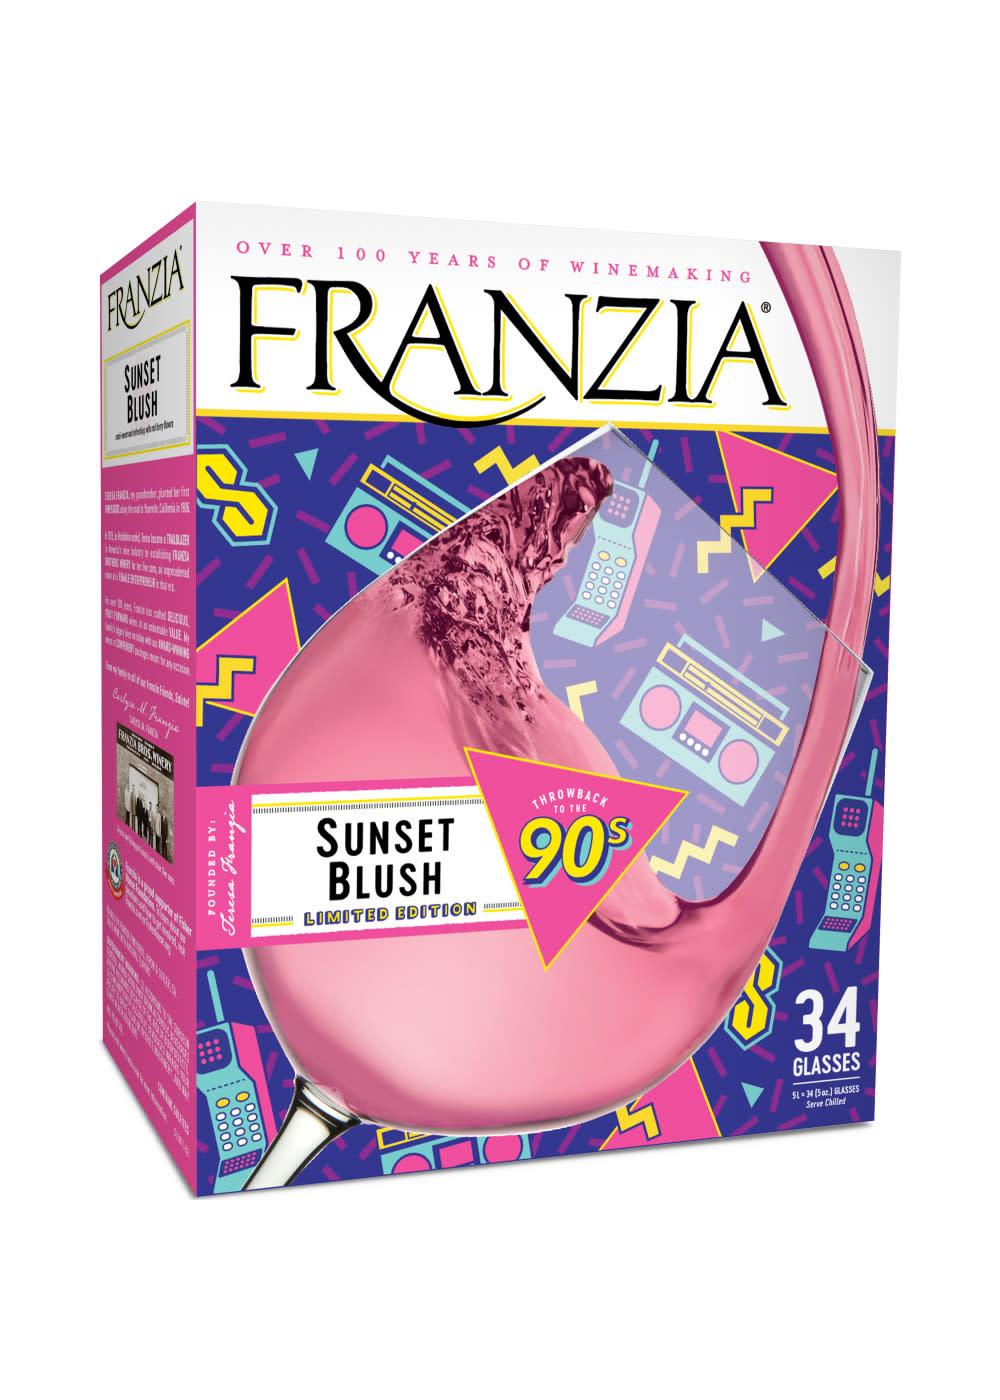 Franzia Sunset Blush Boxed Wine; image 1 of 7